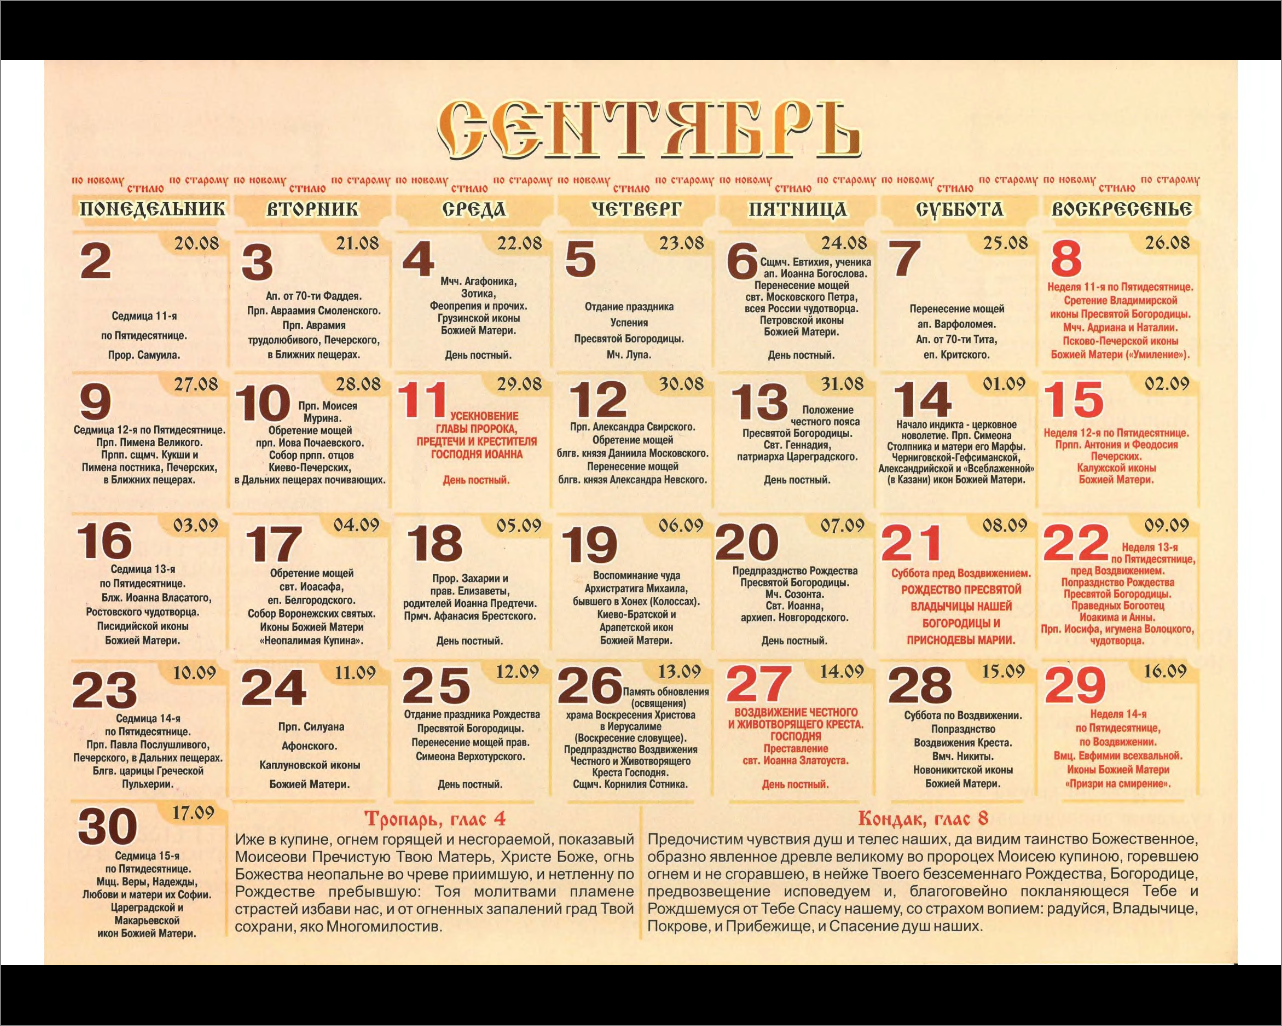 Православный календарь имена август. Имена по православному календарю. Православный календарь имен. Православный календарь святых по именам.